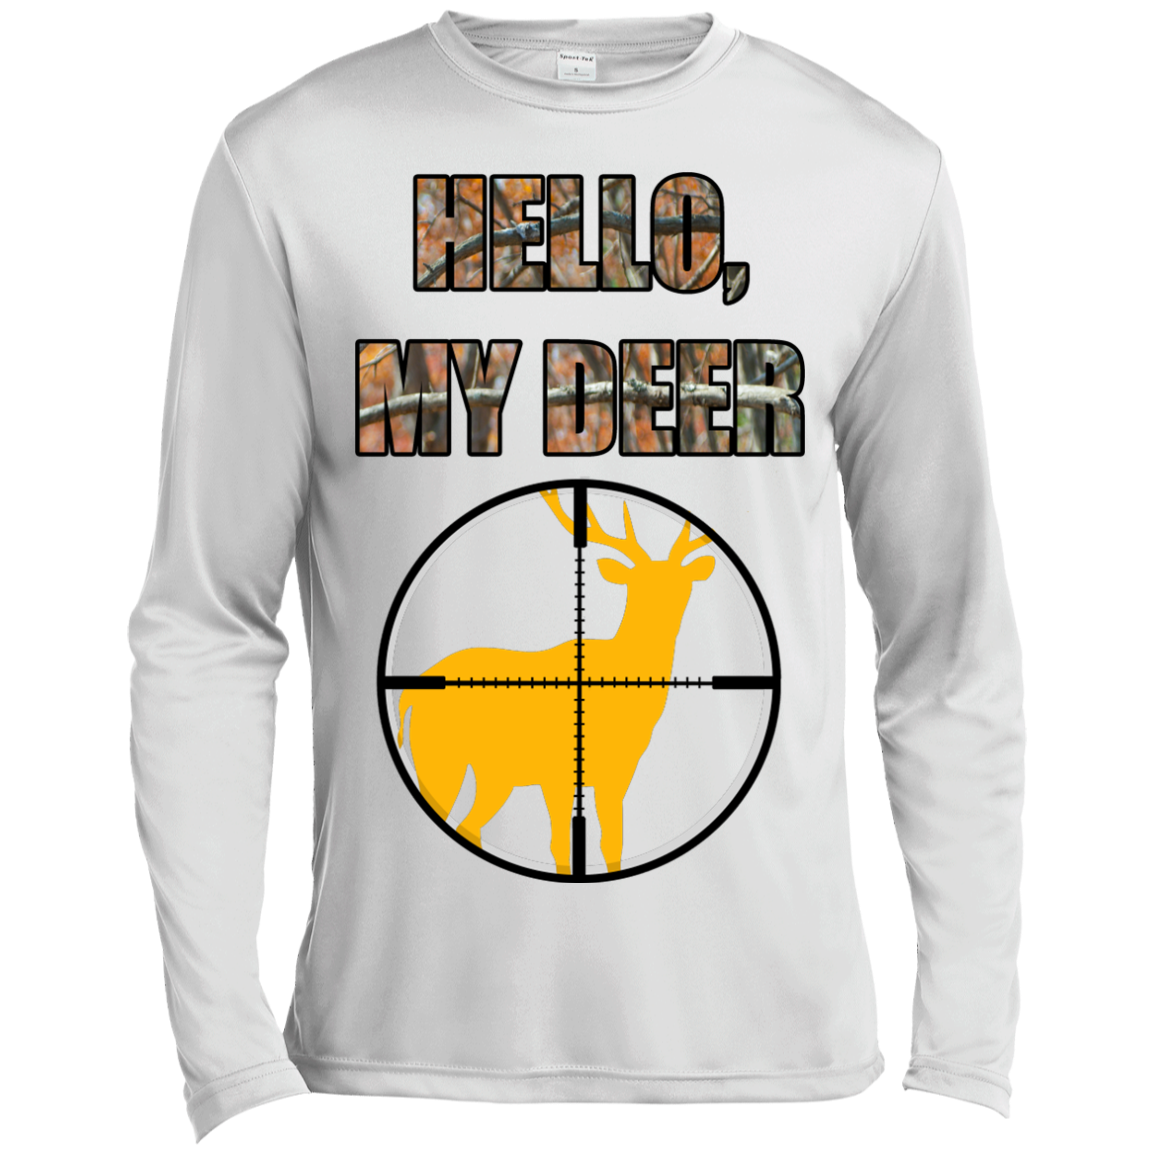 "Hello, My Deer" Long Sleeve Moisture Absorbing Shirt